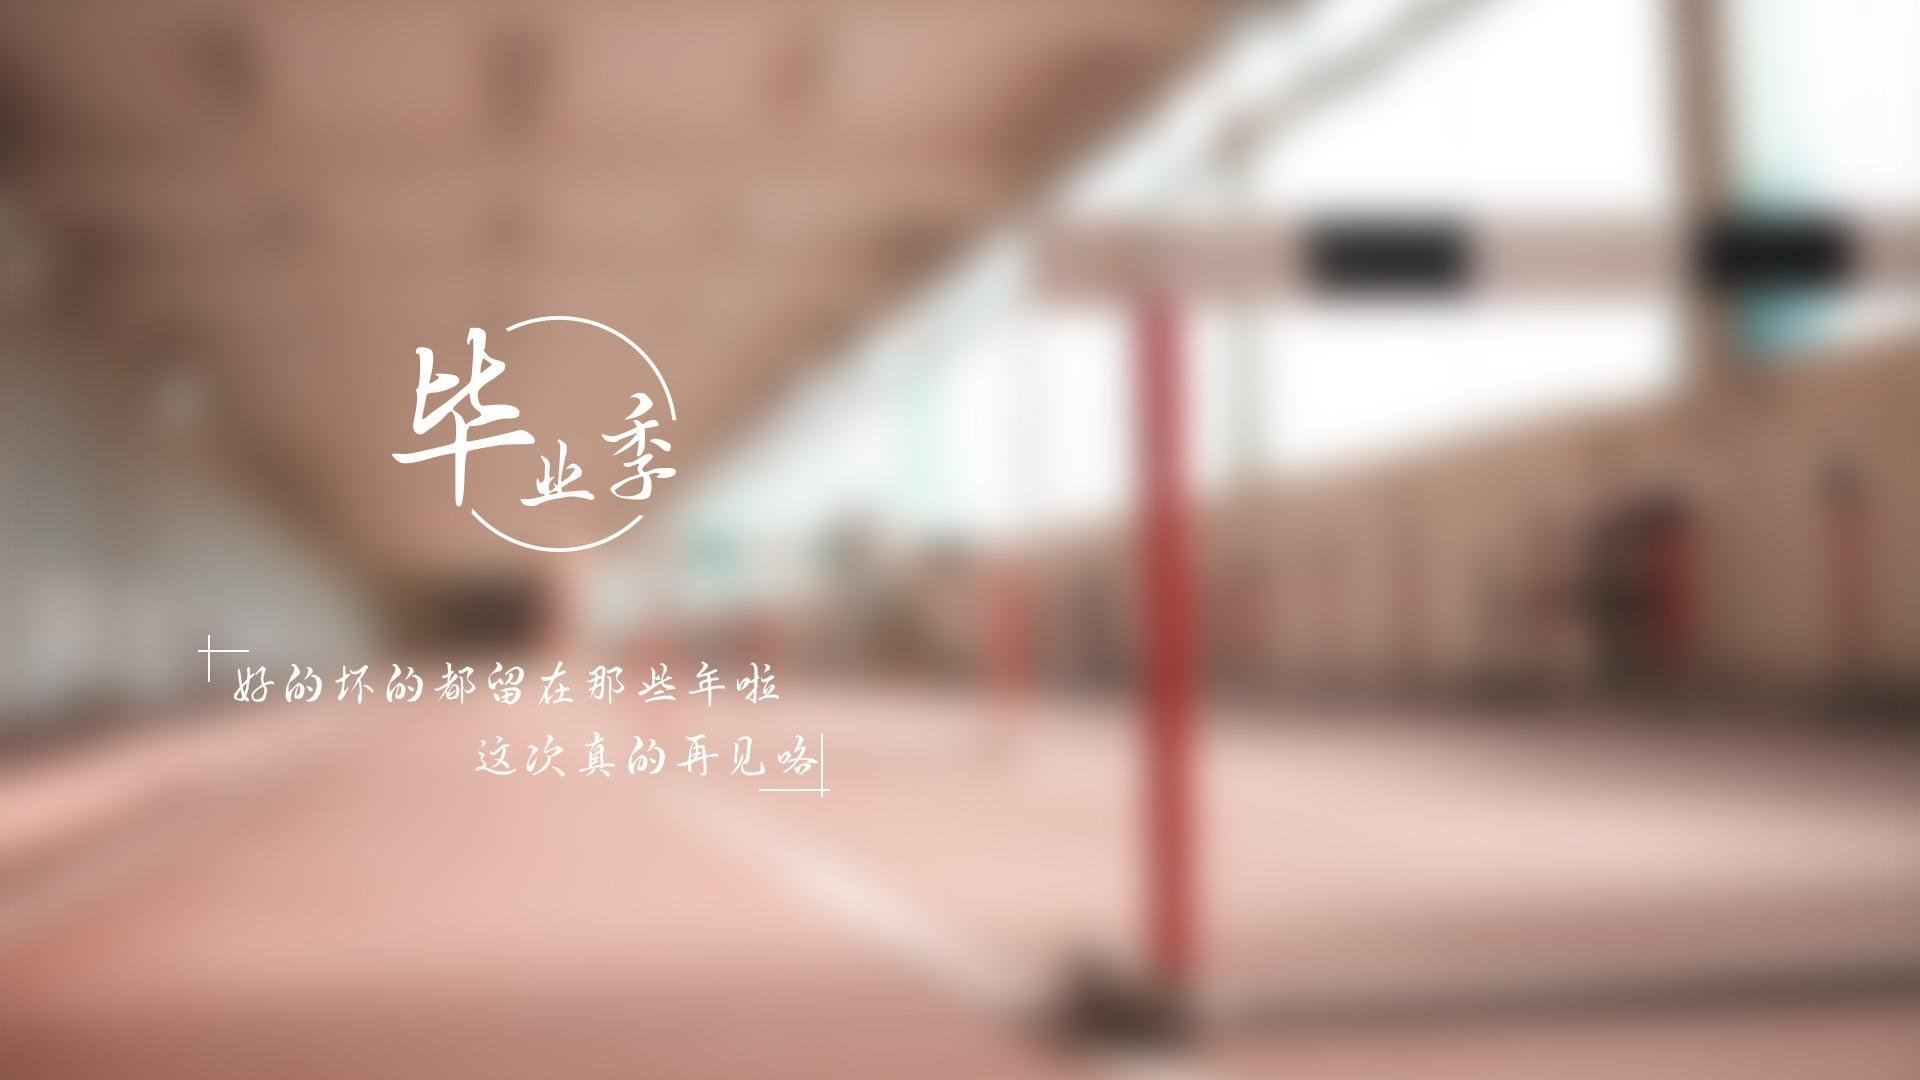 燕山大学2015考研招生简章